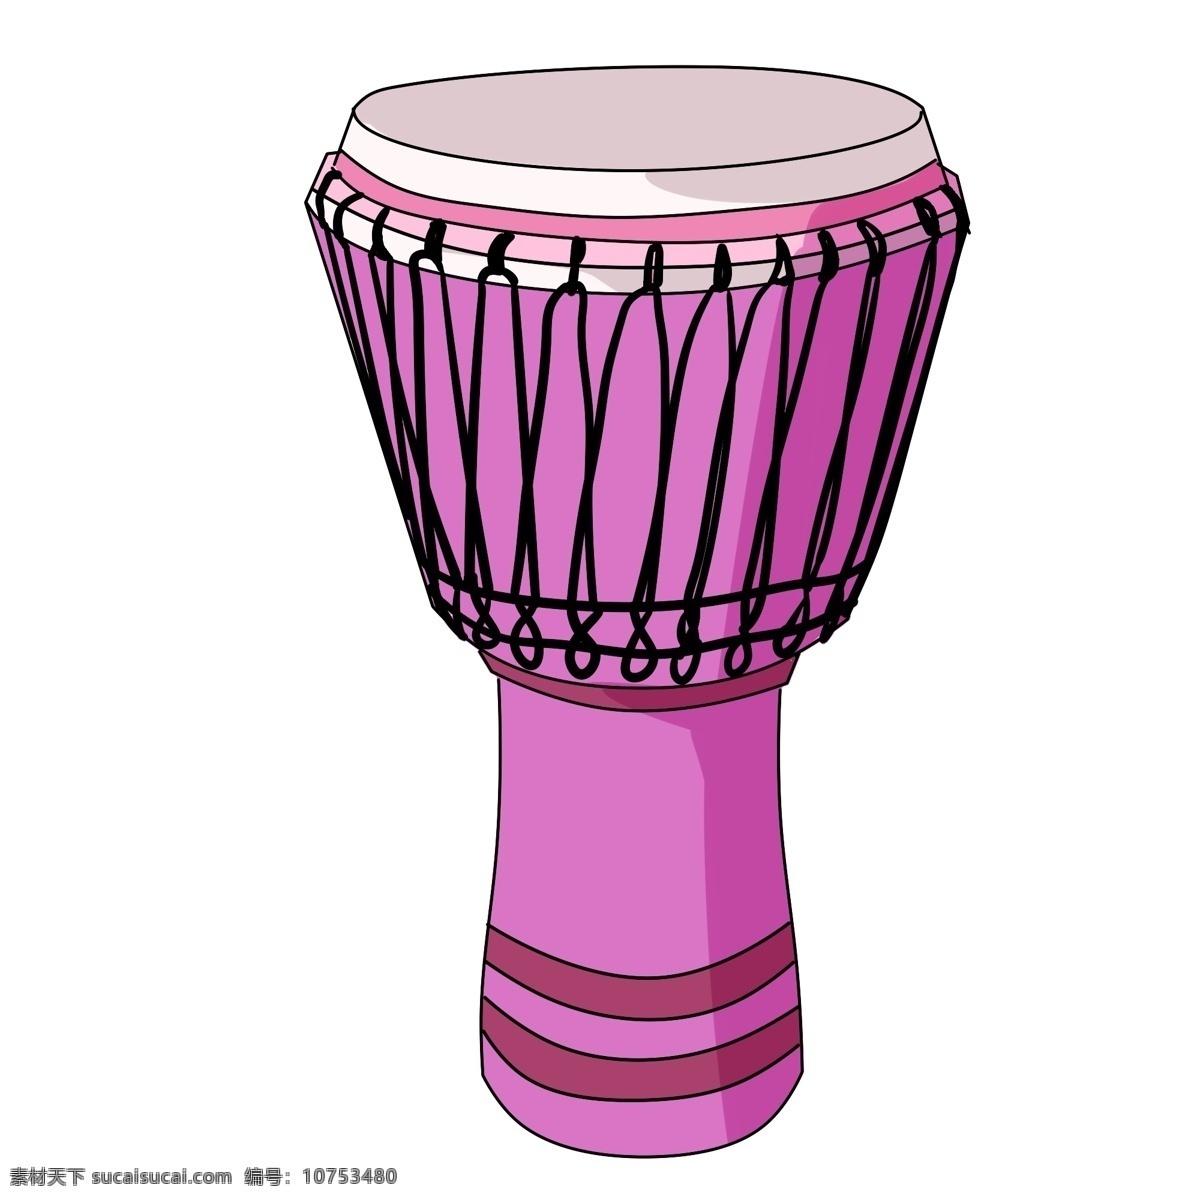 打击乐 乐器 手鼓 插画 演奏器材 紫色音乐乐器 手鼓插画 鼓 打鼓 传统 民族 皮革